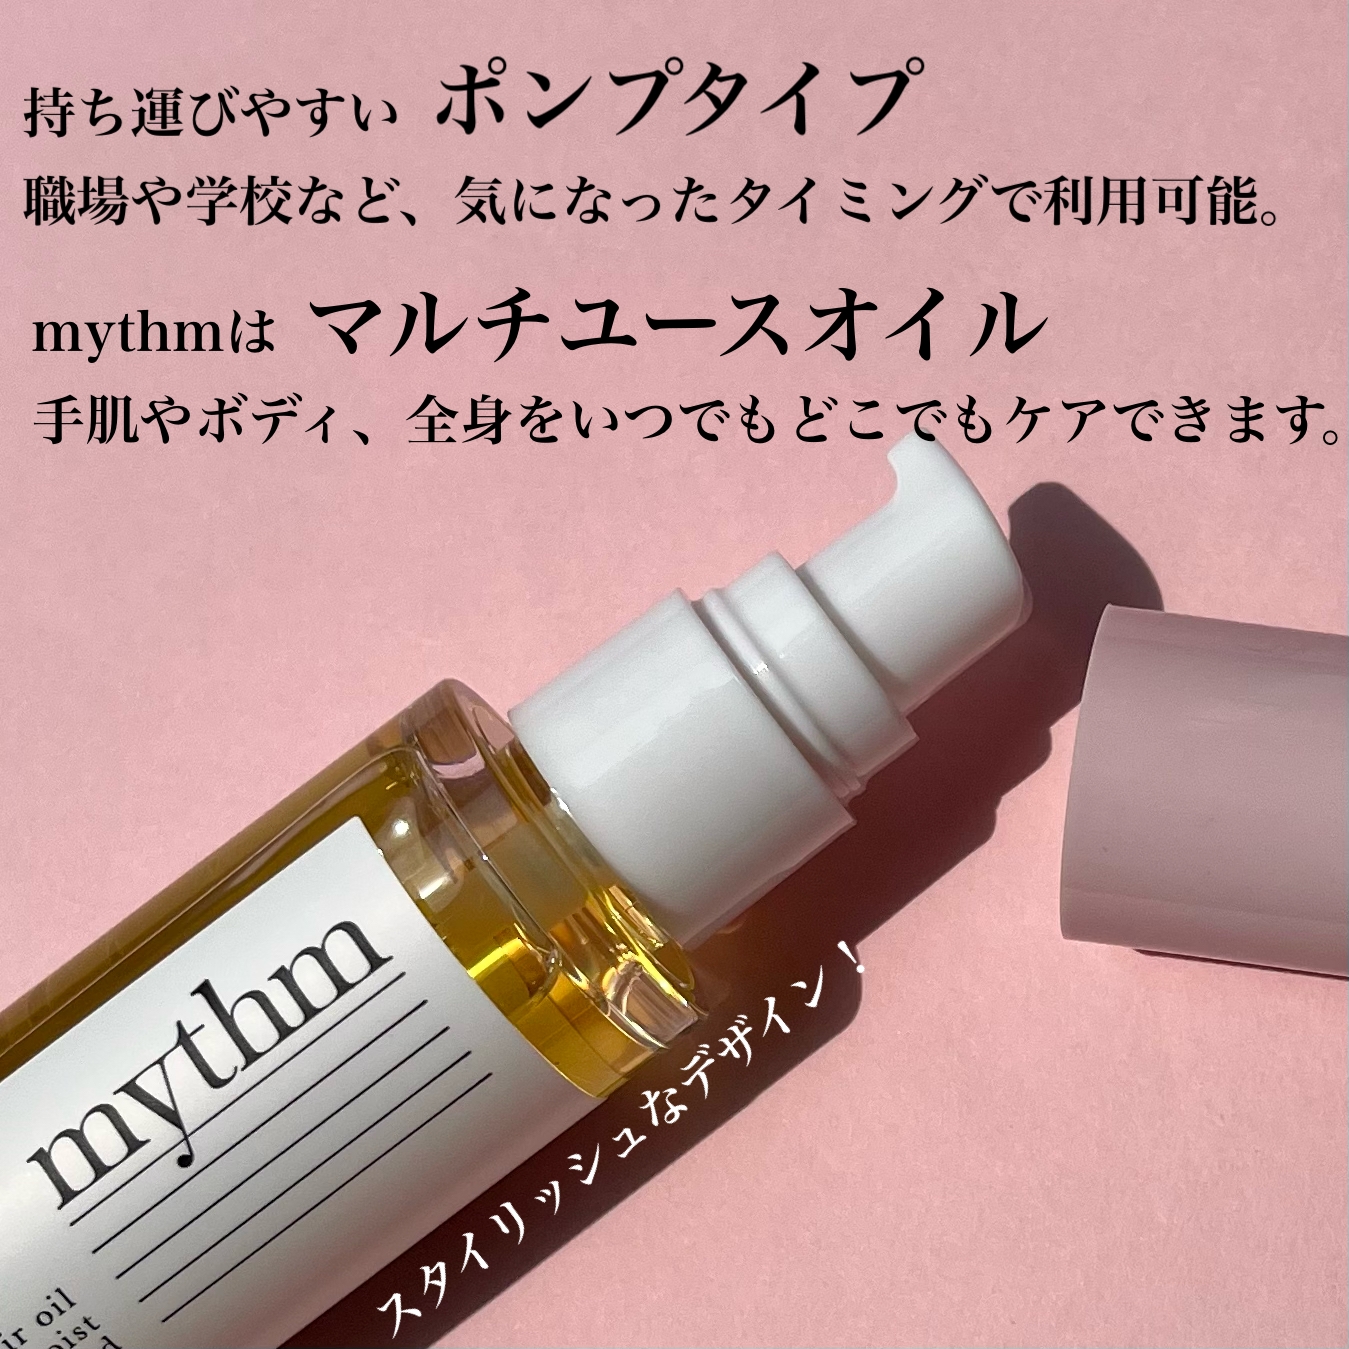 mythm(ミズム) マルチユースヘアオイル ディープモイストの良い点・メリットに関するsachikoさんの口コミ画像3